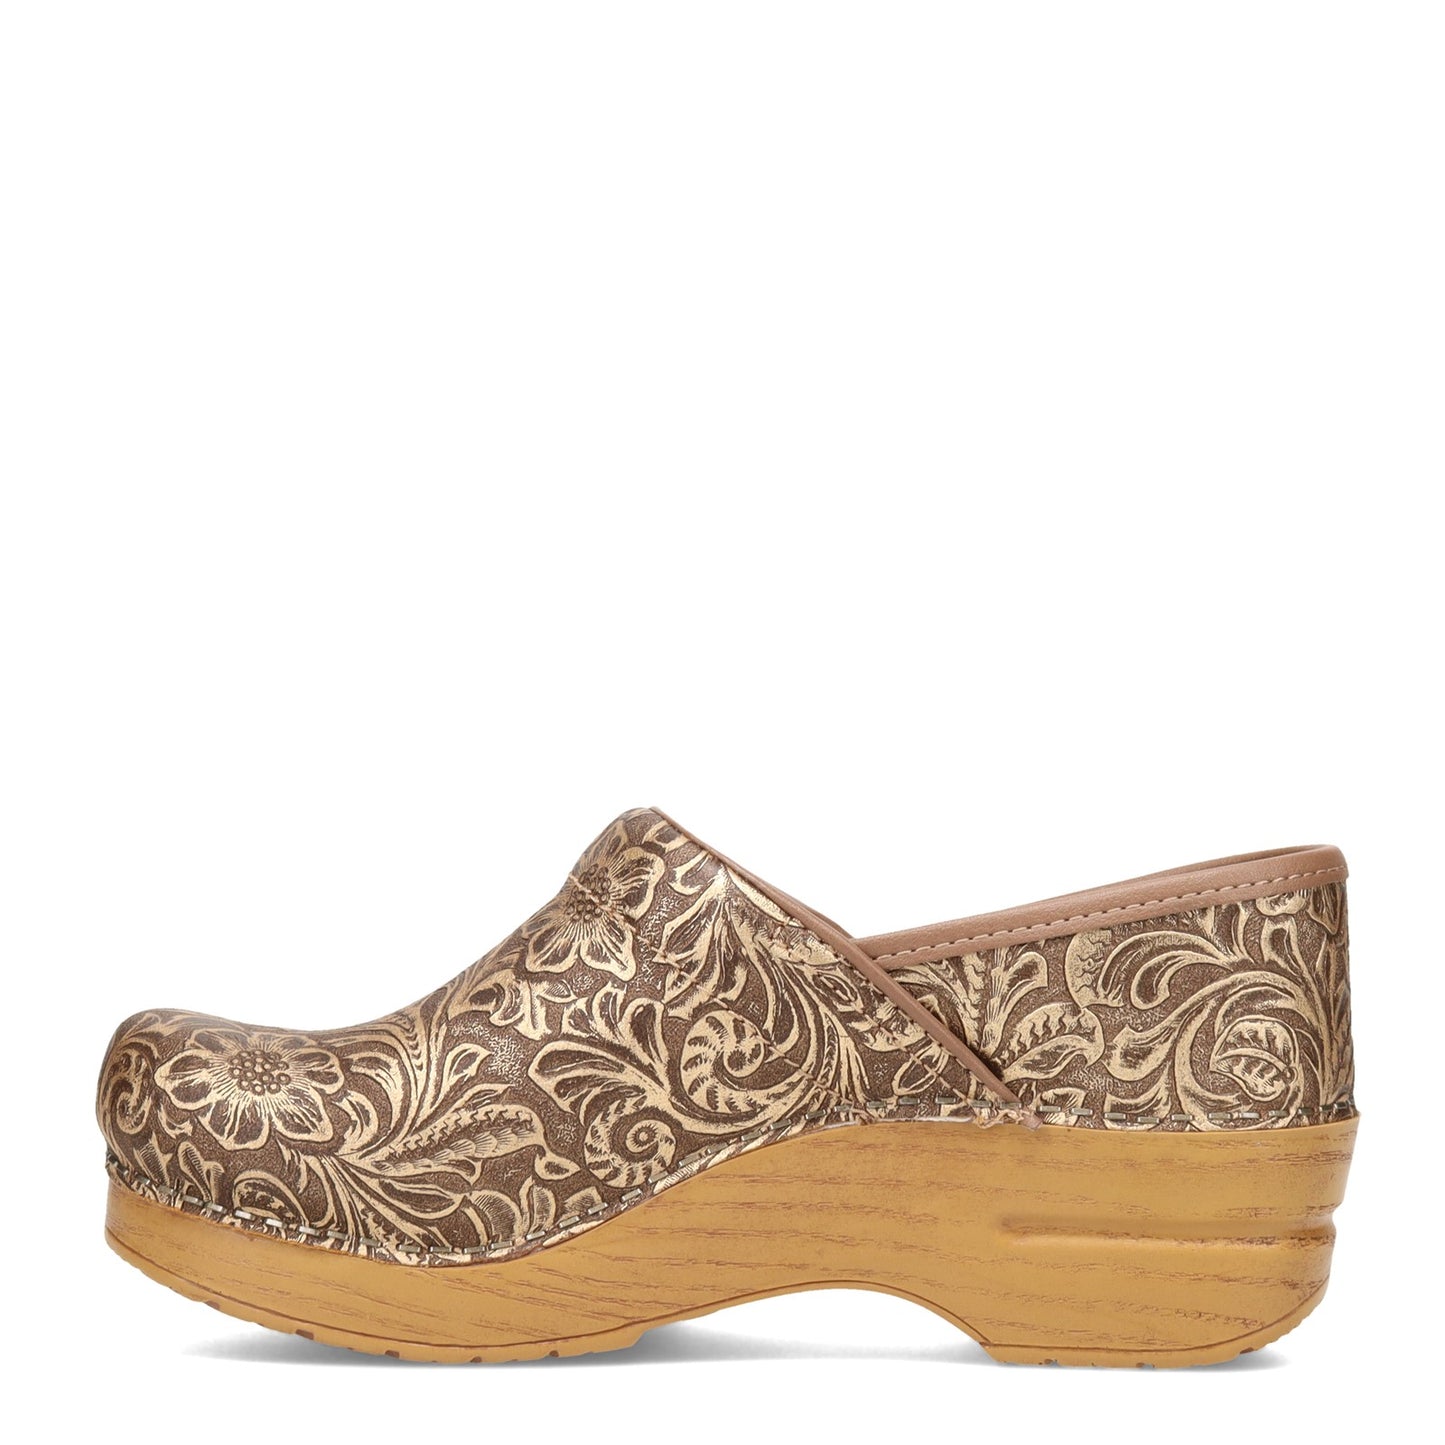 Peltz Shoes  Women's Dansko Professional Clog Antique 906-781212